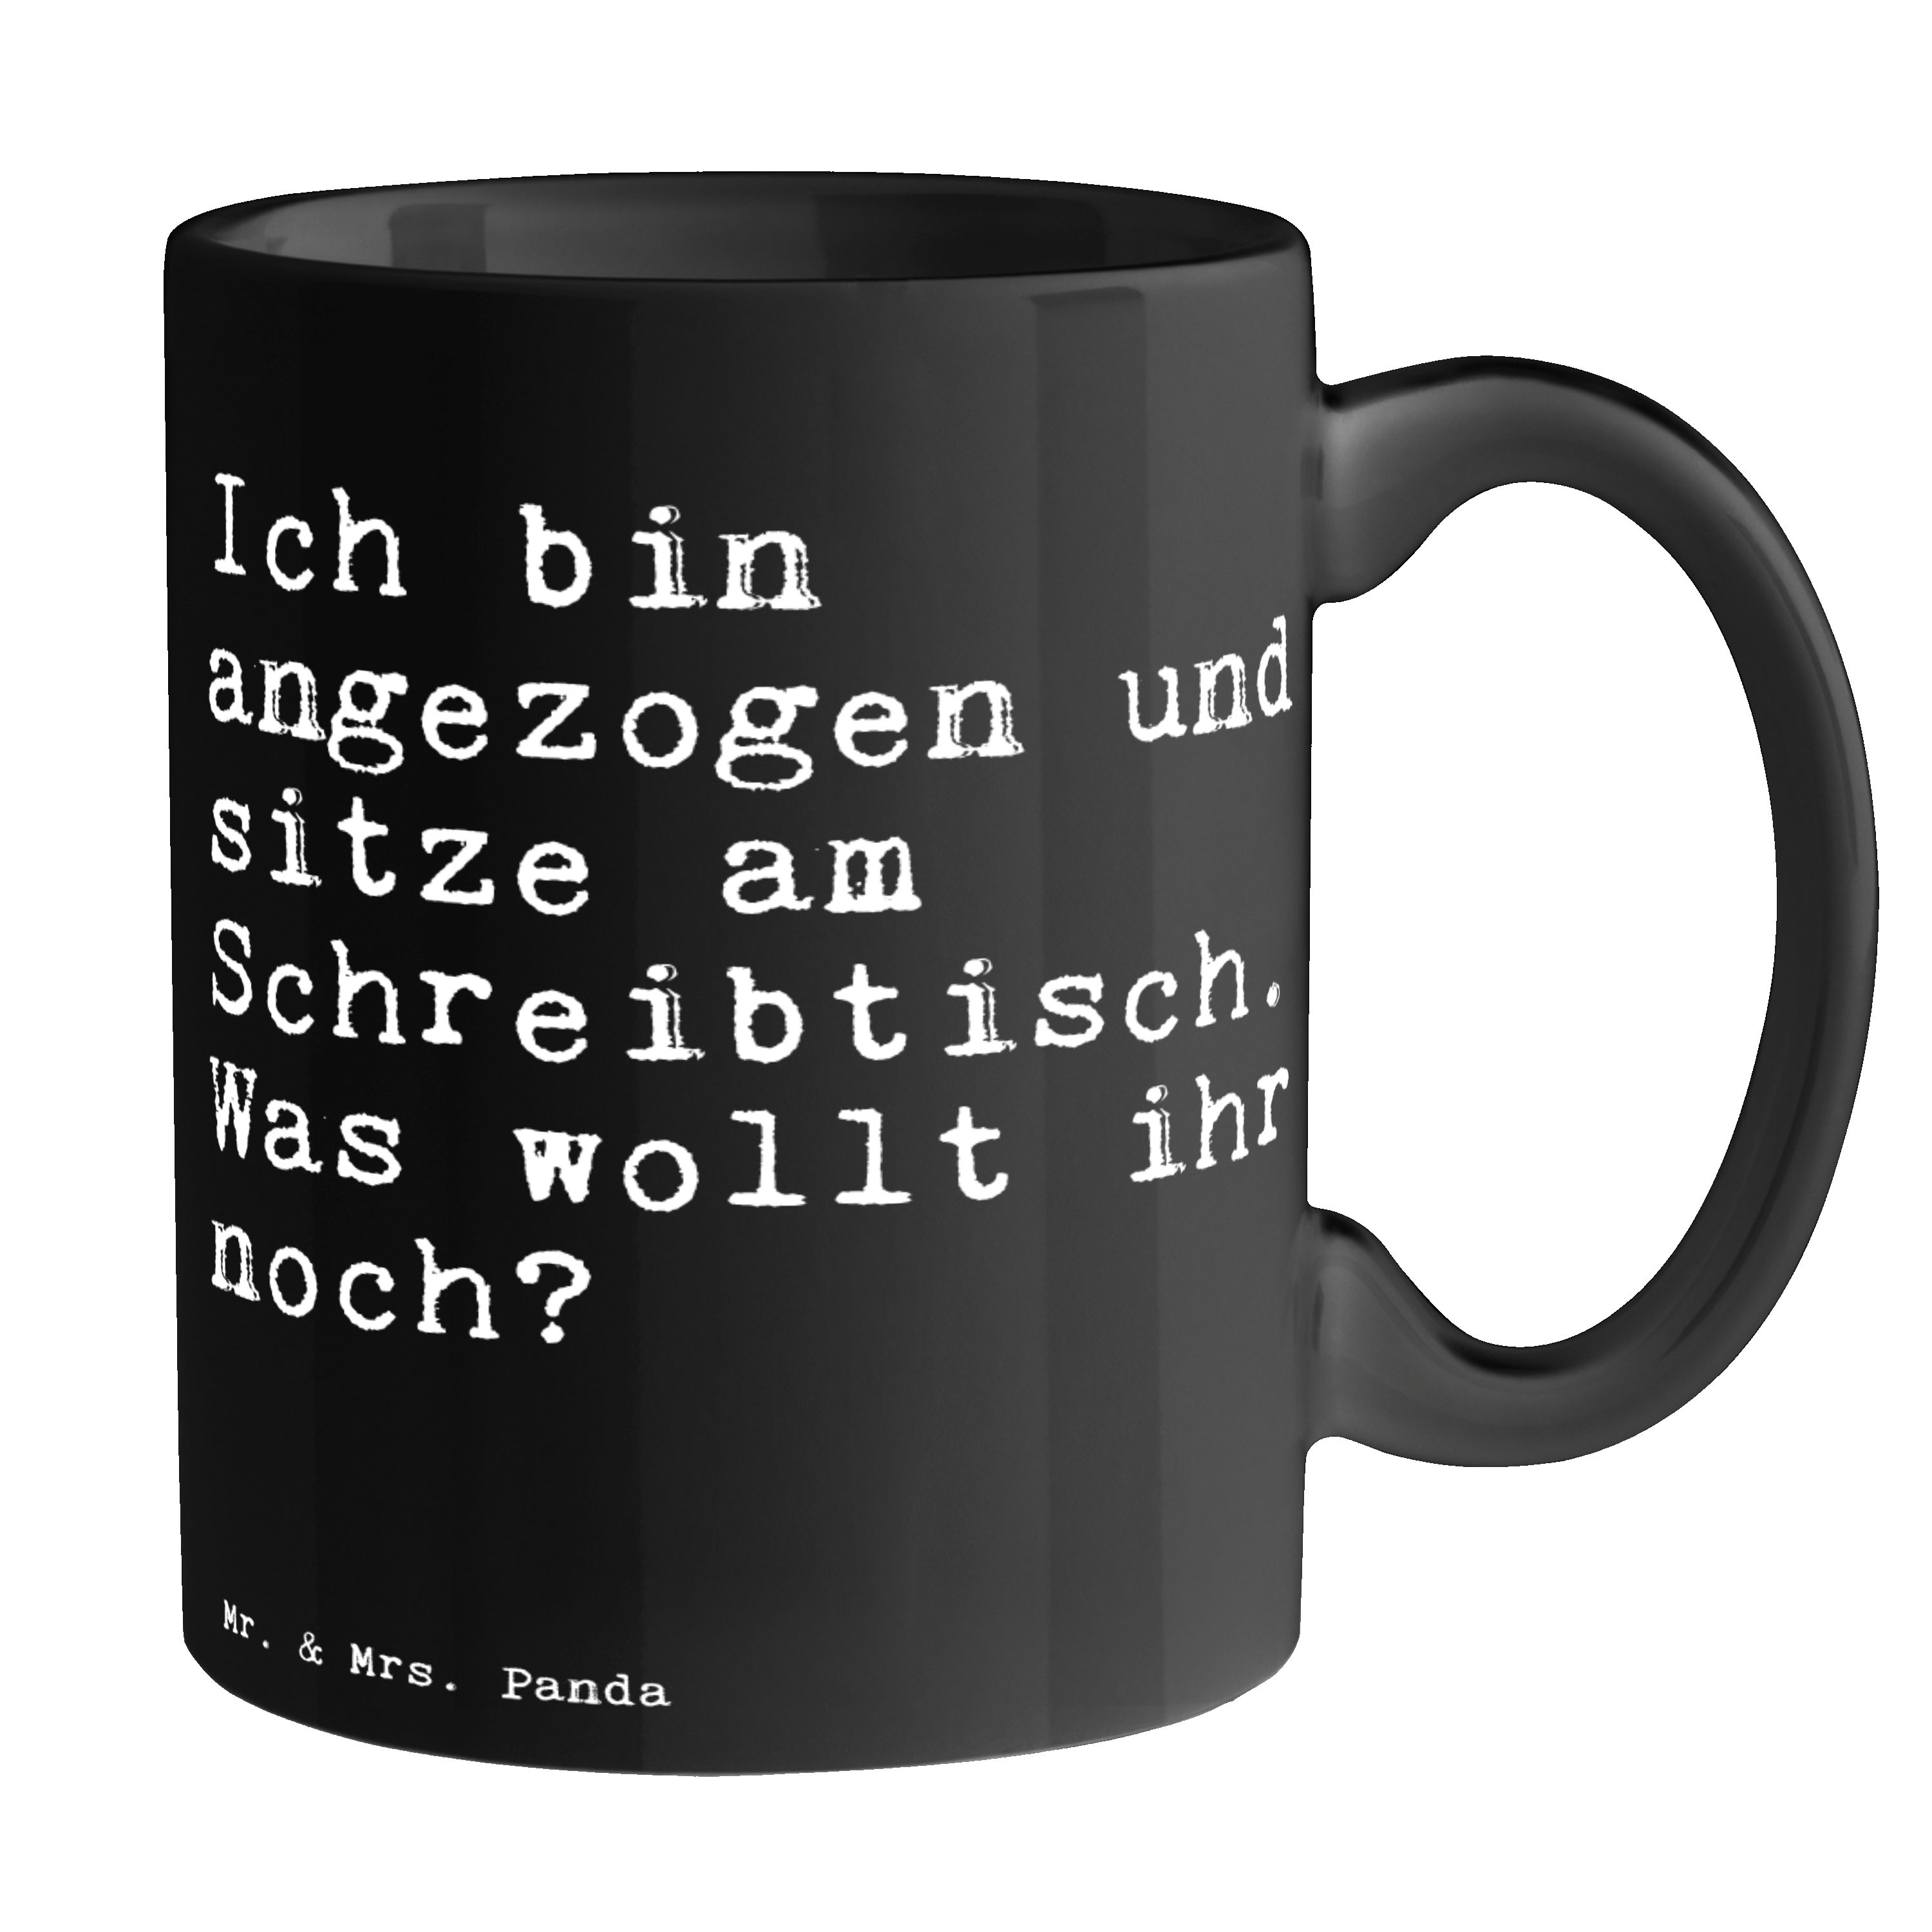 Mr. & Mrs. Panda Tasse Ich bin angezogen und... - Schwarz - Geschenk, Chef, Kaffeebecher, Bü, Keramik Schwarz